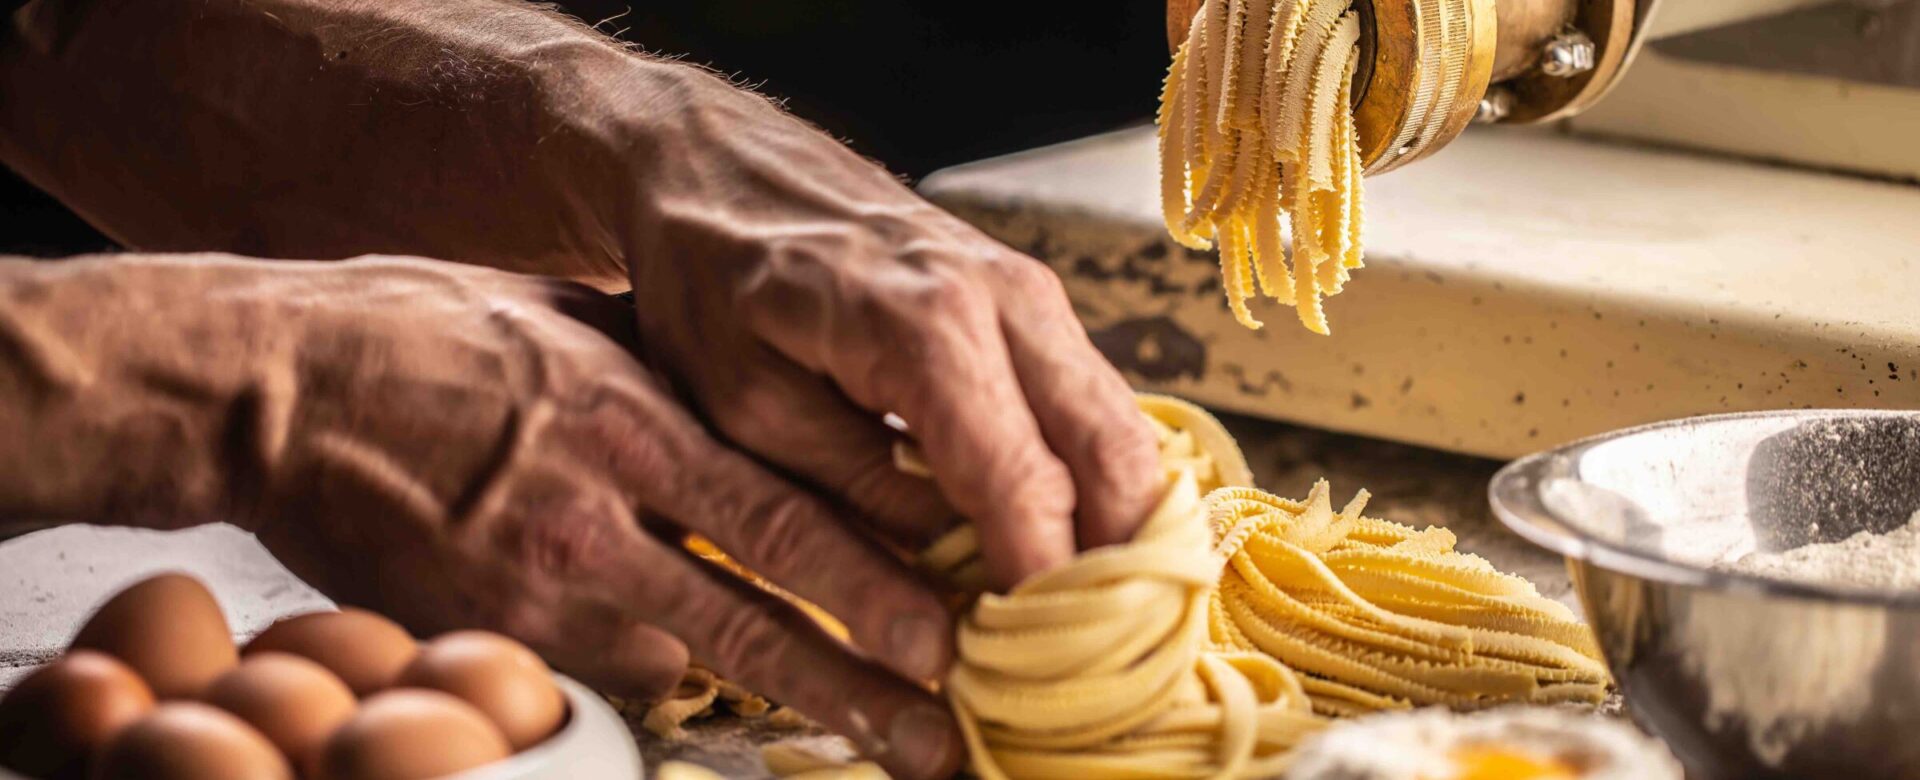 Hoe wordt pasta gemaakt?